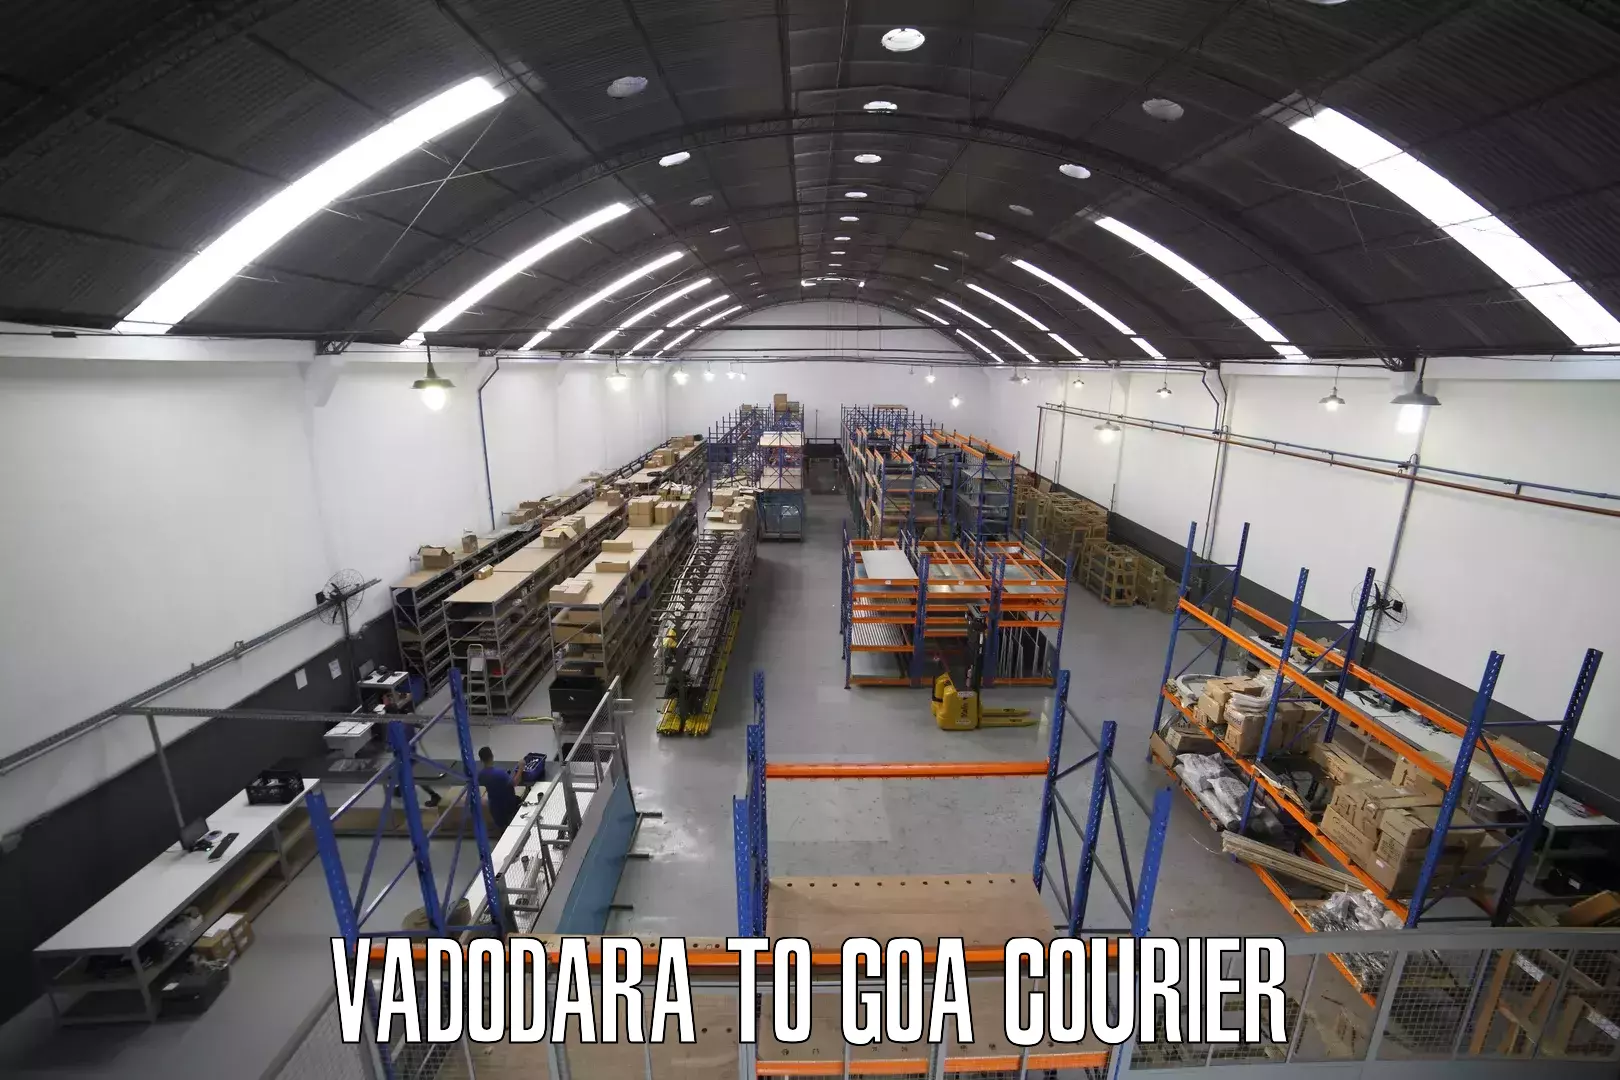 Reliable courier service Vadodara to Margao